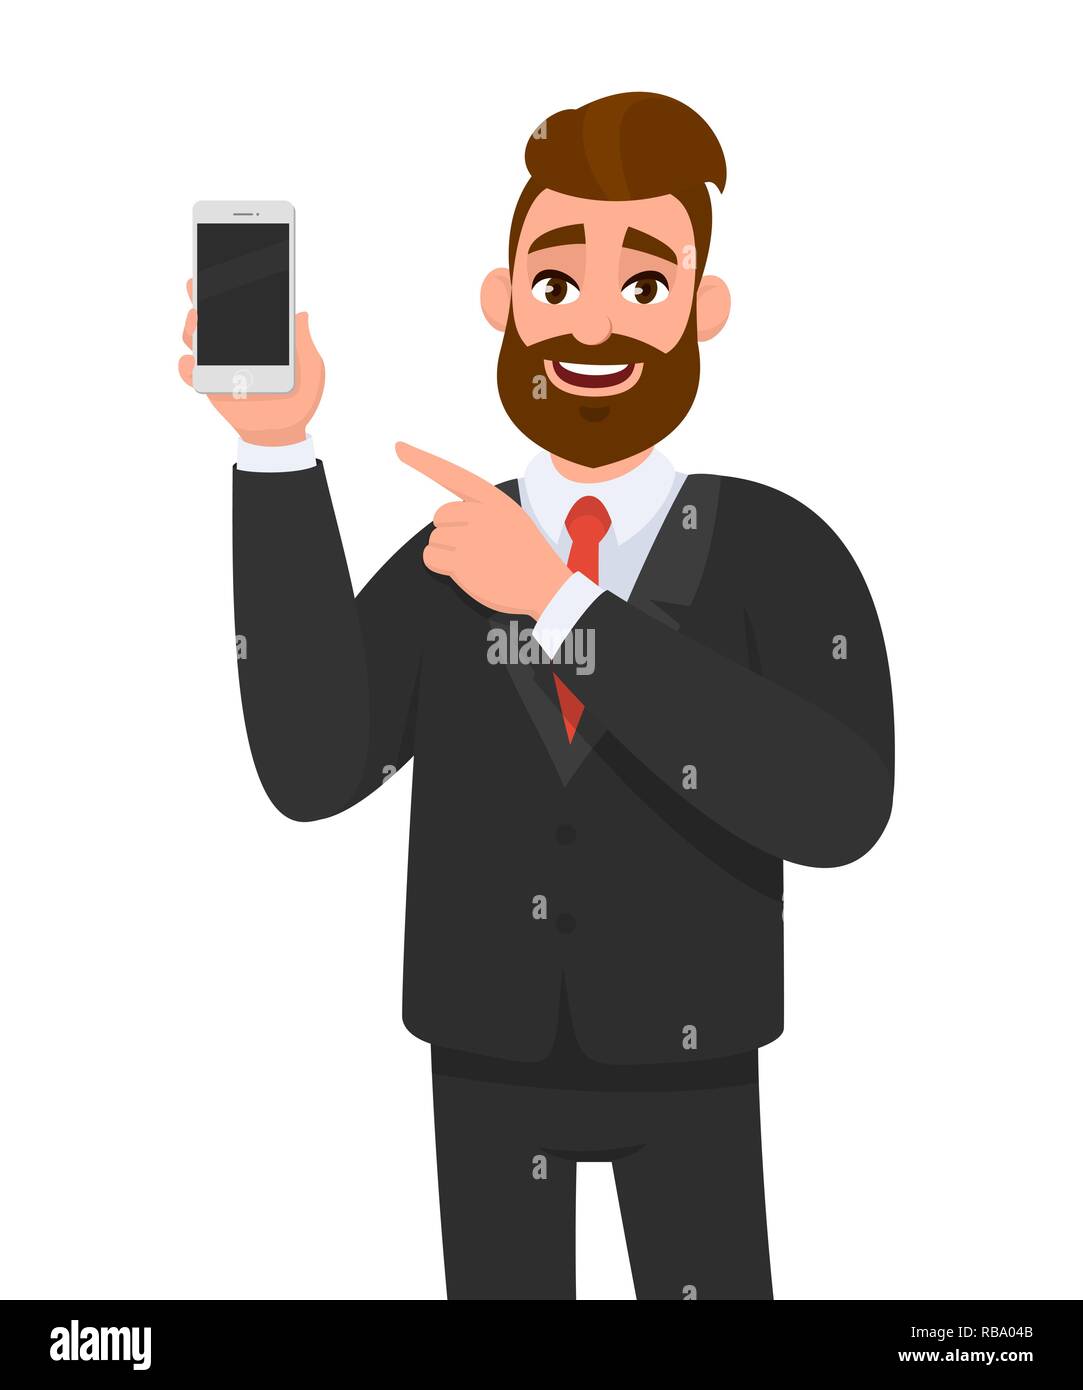 Homme d'affaires barbu attrayant tenant/montrant un smartphone/téléphone portable/téléphone portable flambant neuf en main et pointant l'index vers. Émotion humaine Illustration de Vecteur